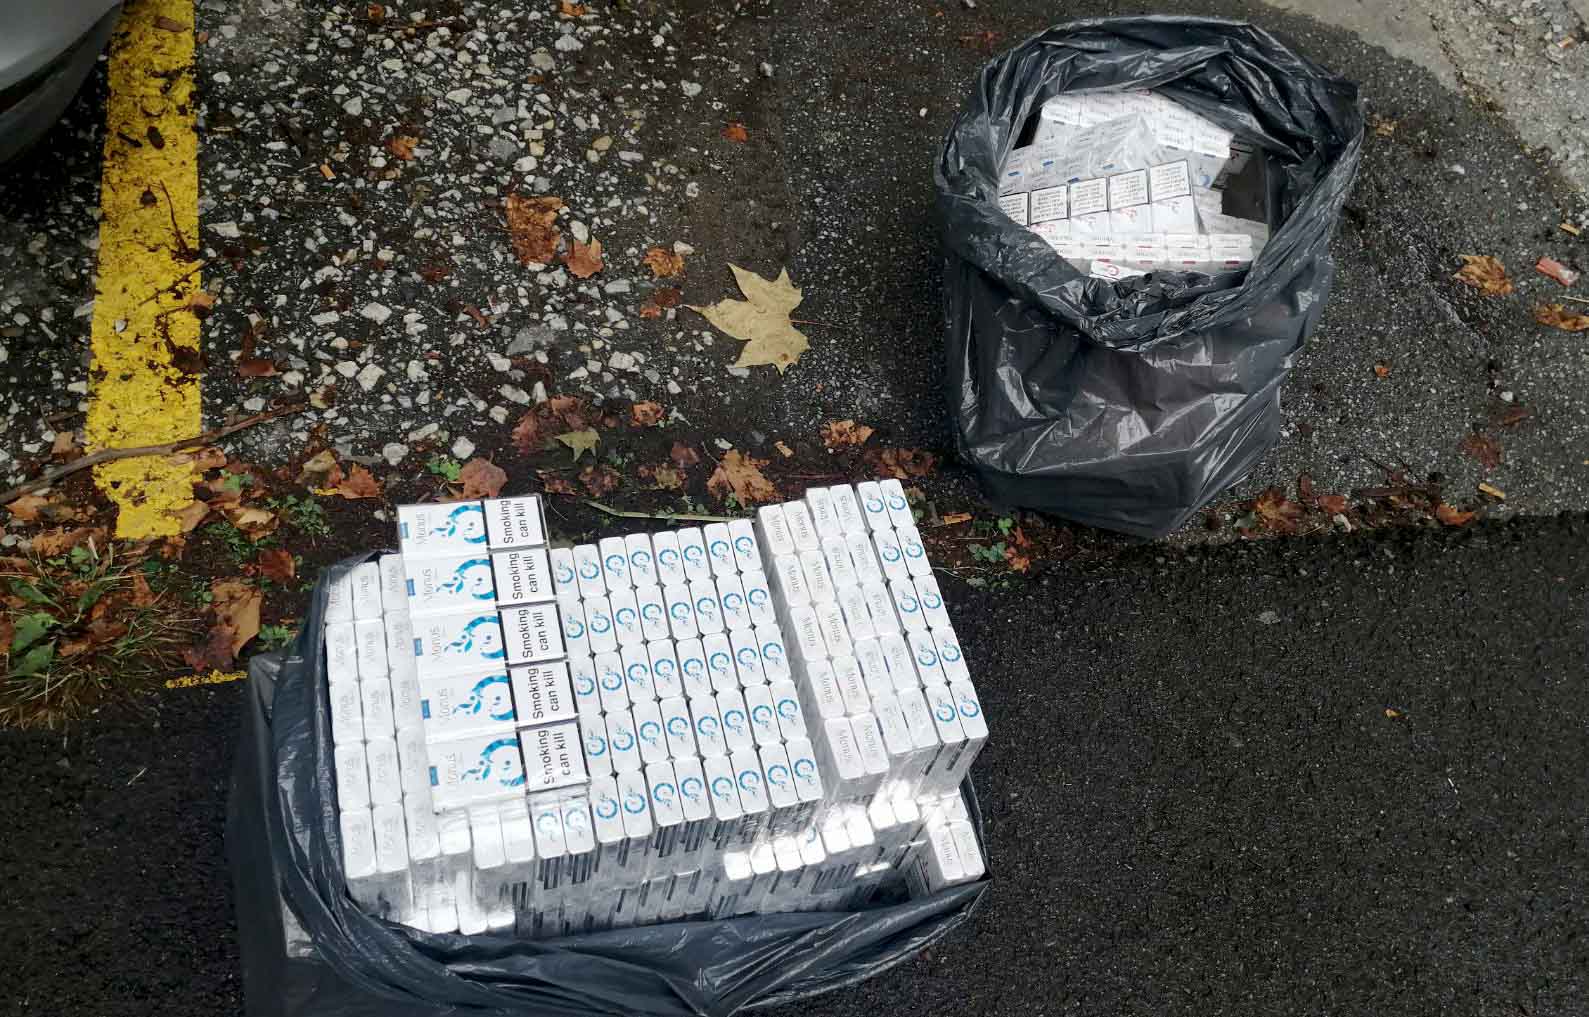   Полиција у аутомобилу пронашла 1000 паклица цигарета